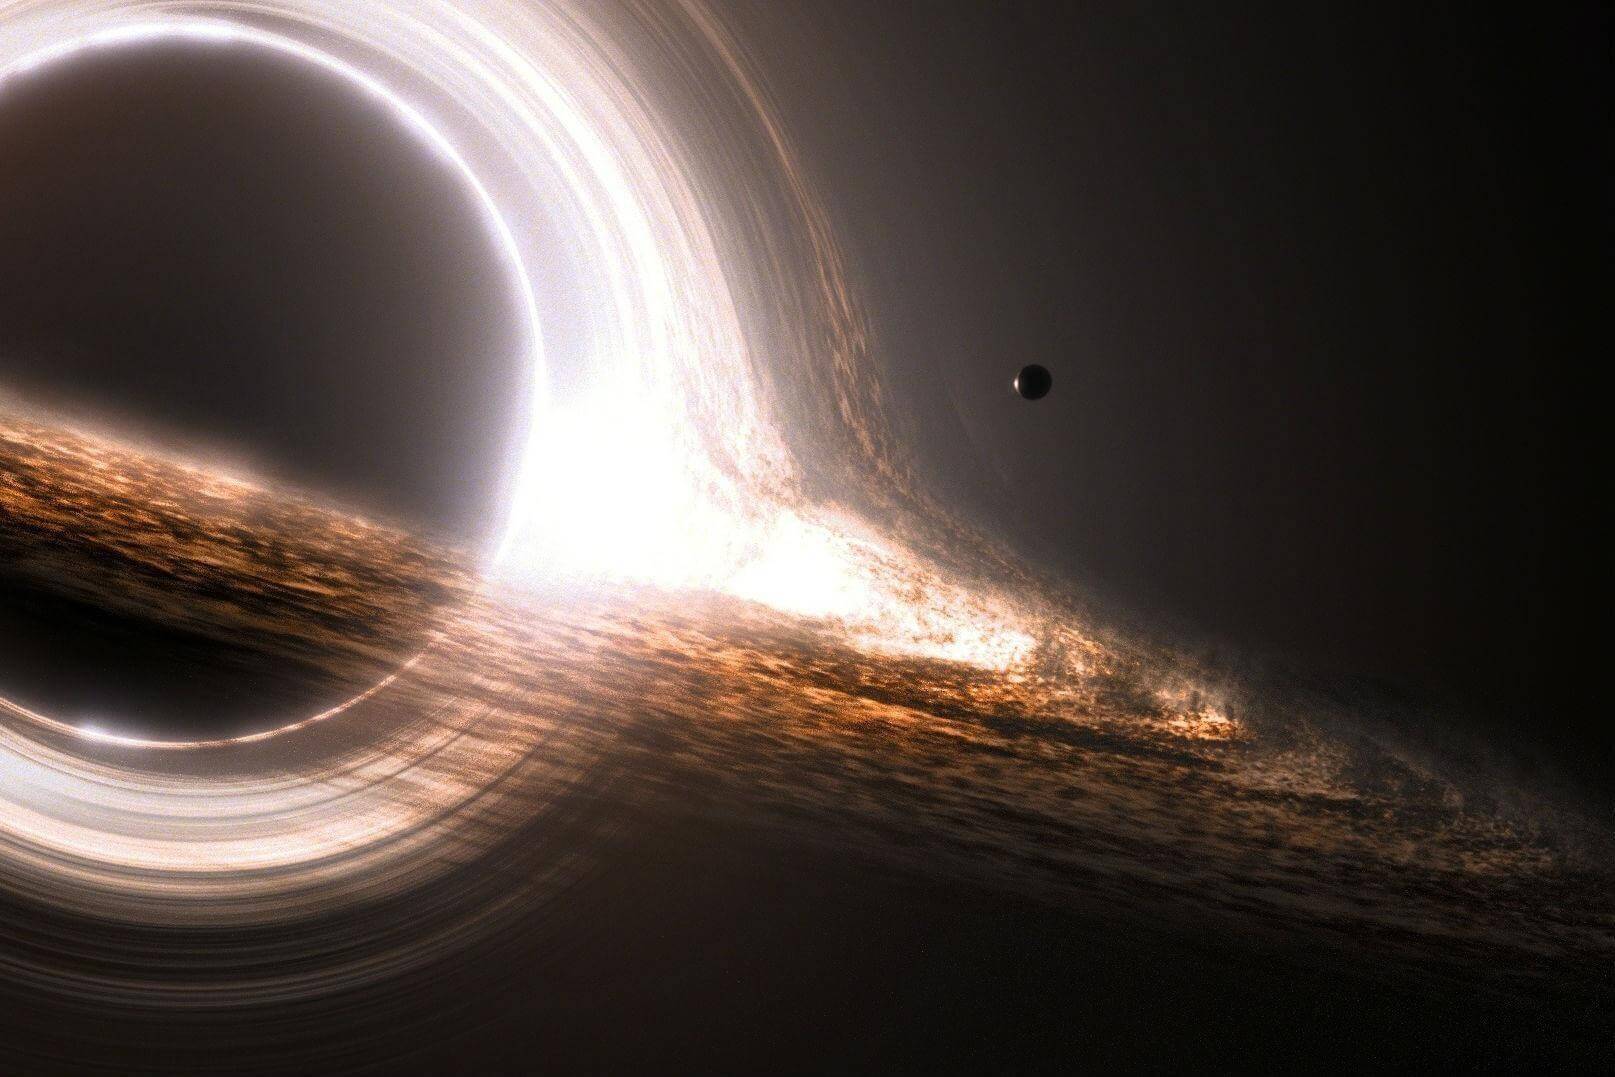 Forskere har funnet en gigantisk svart hull, men tvilte på det